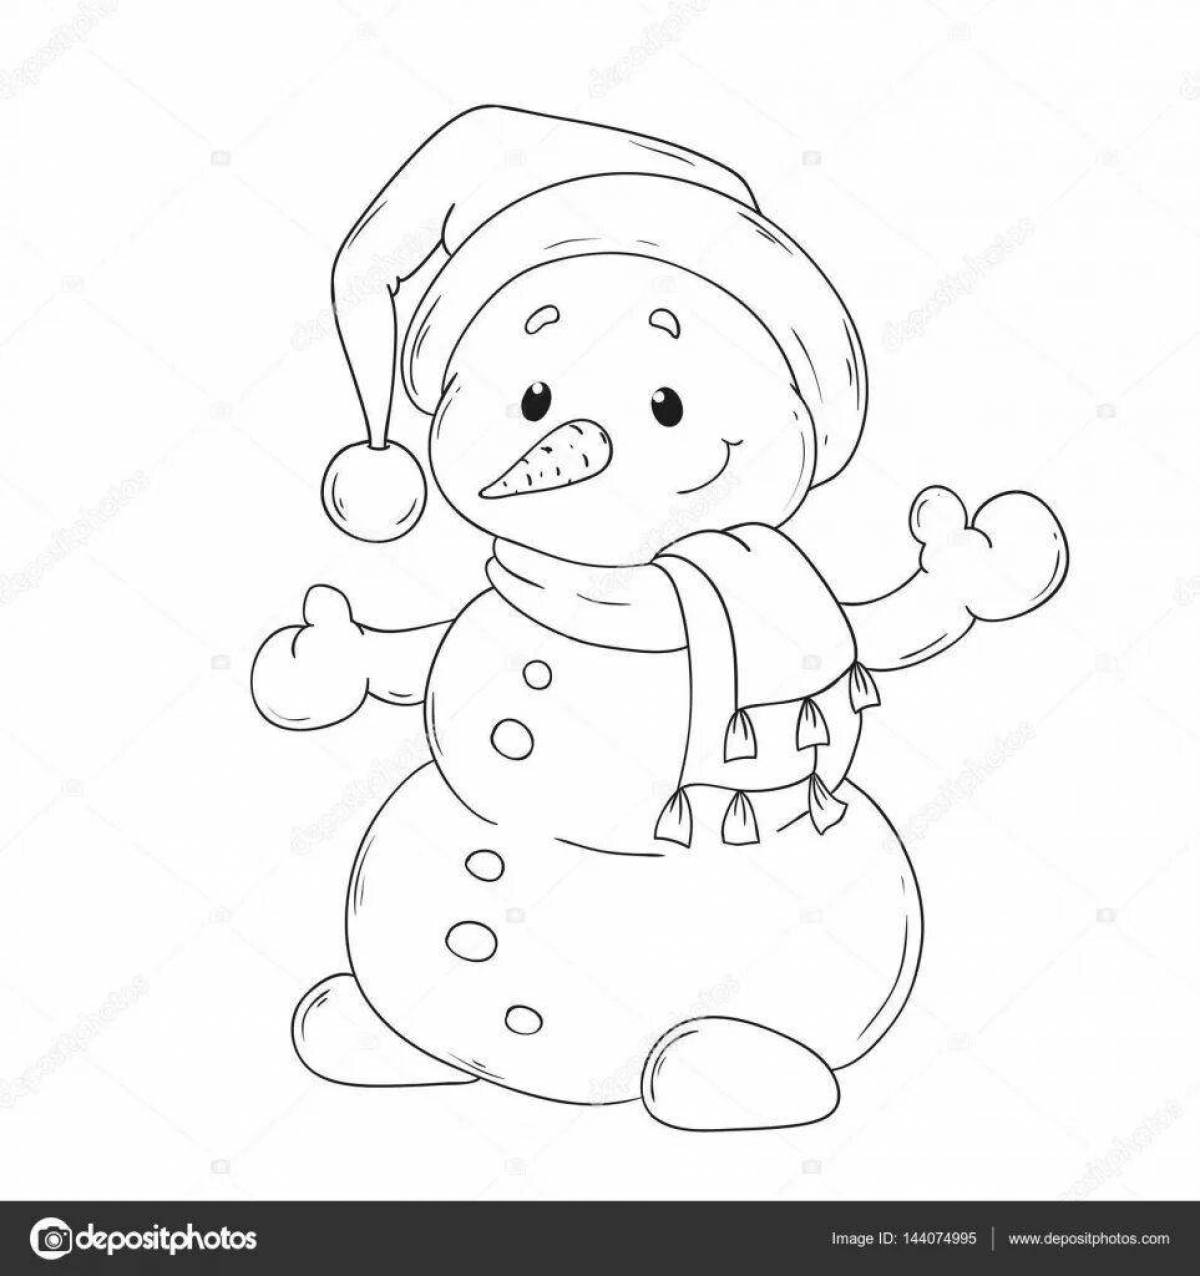 Luminous coloring cute snowman